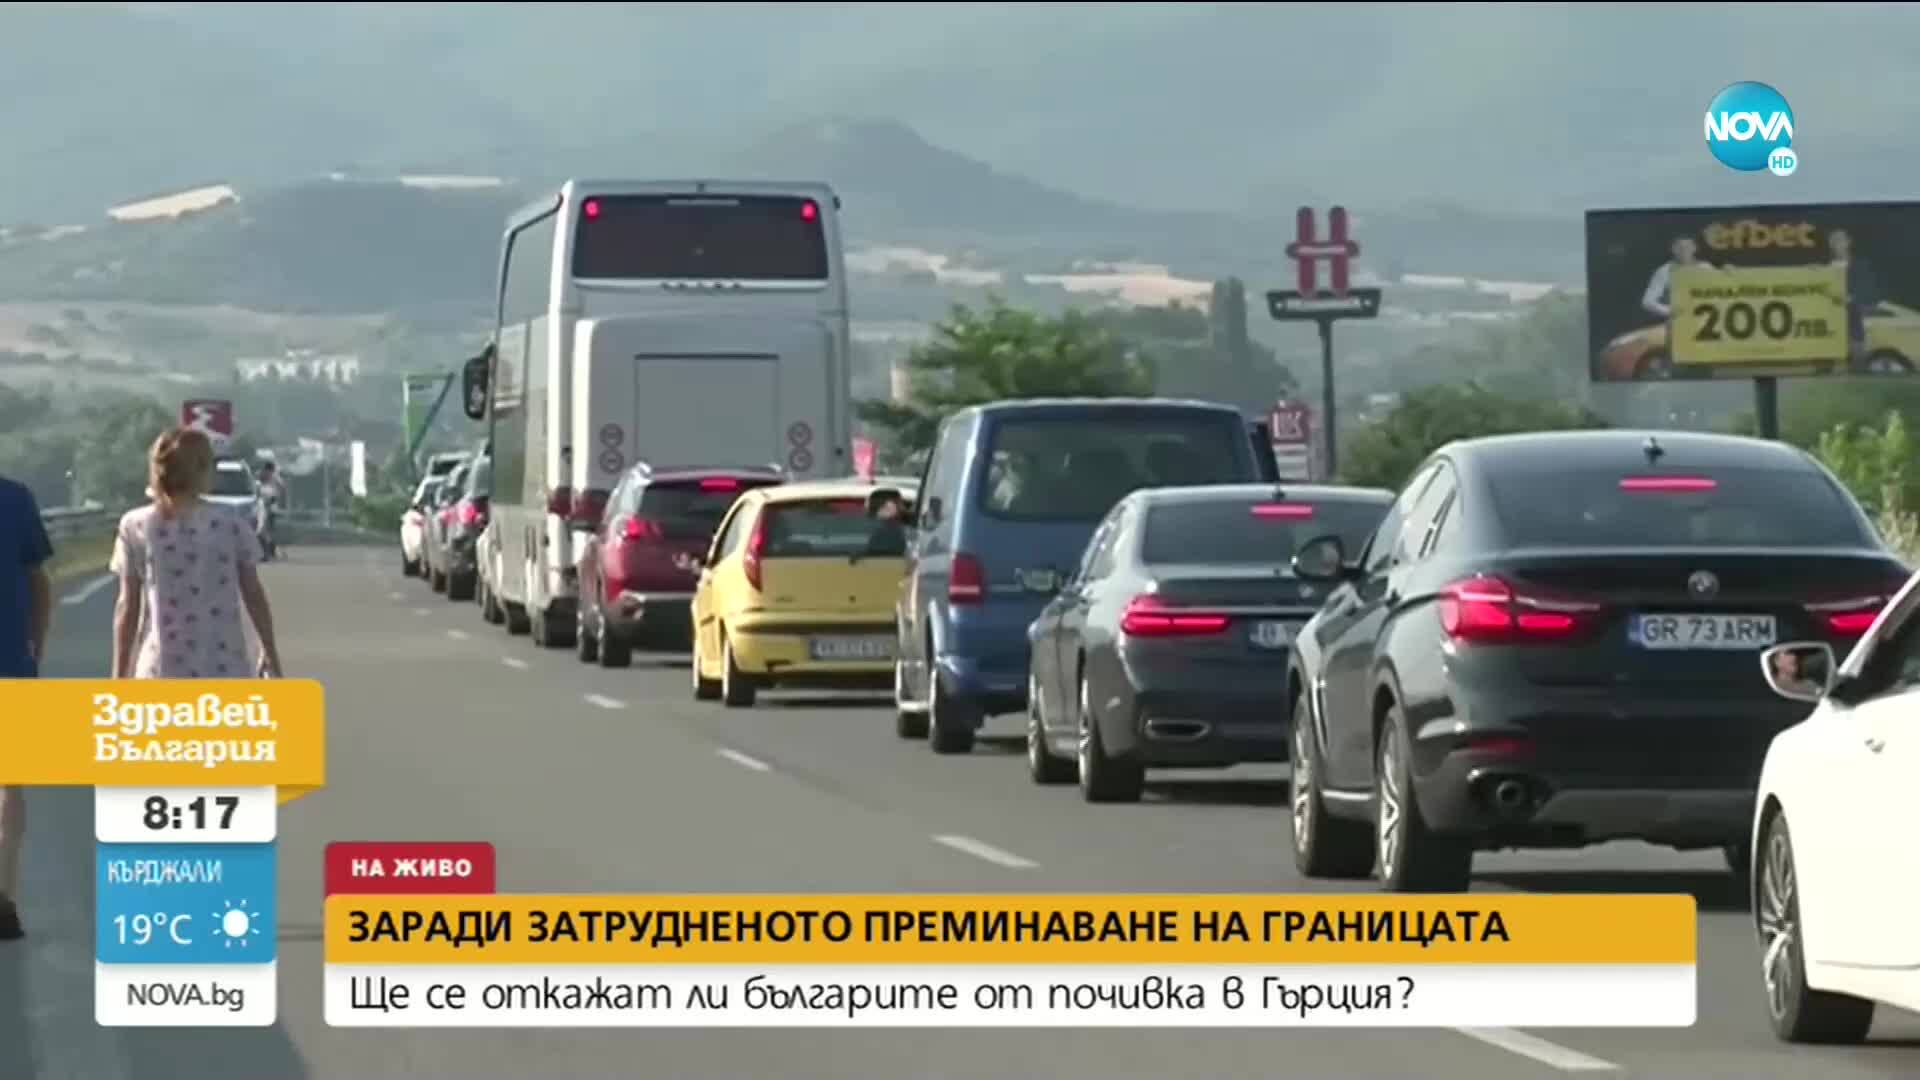 Ще се откажат ли българите от почивка в Гърция?